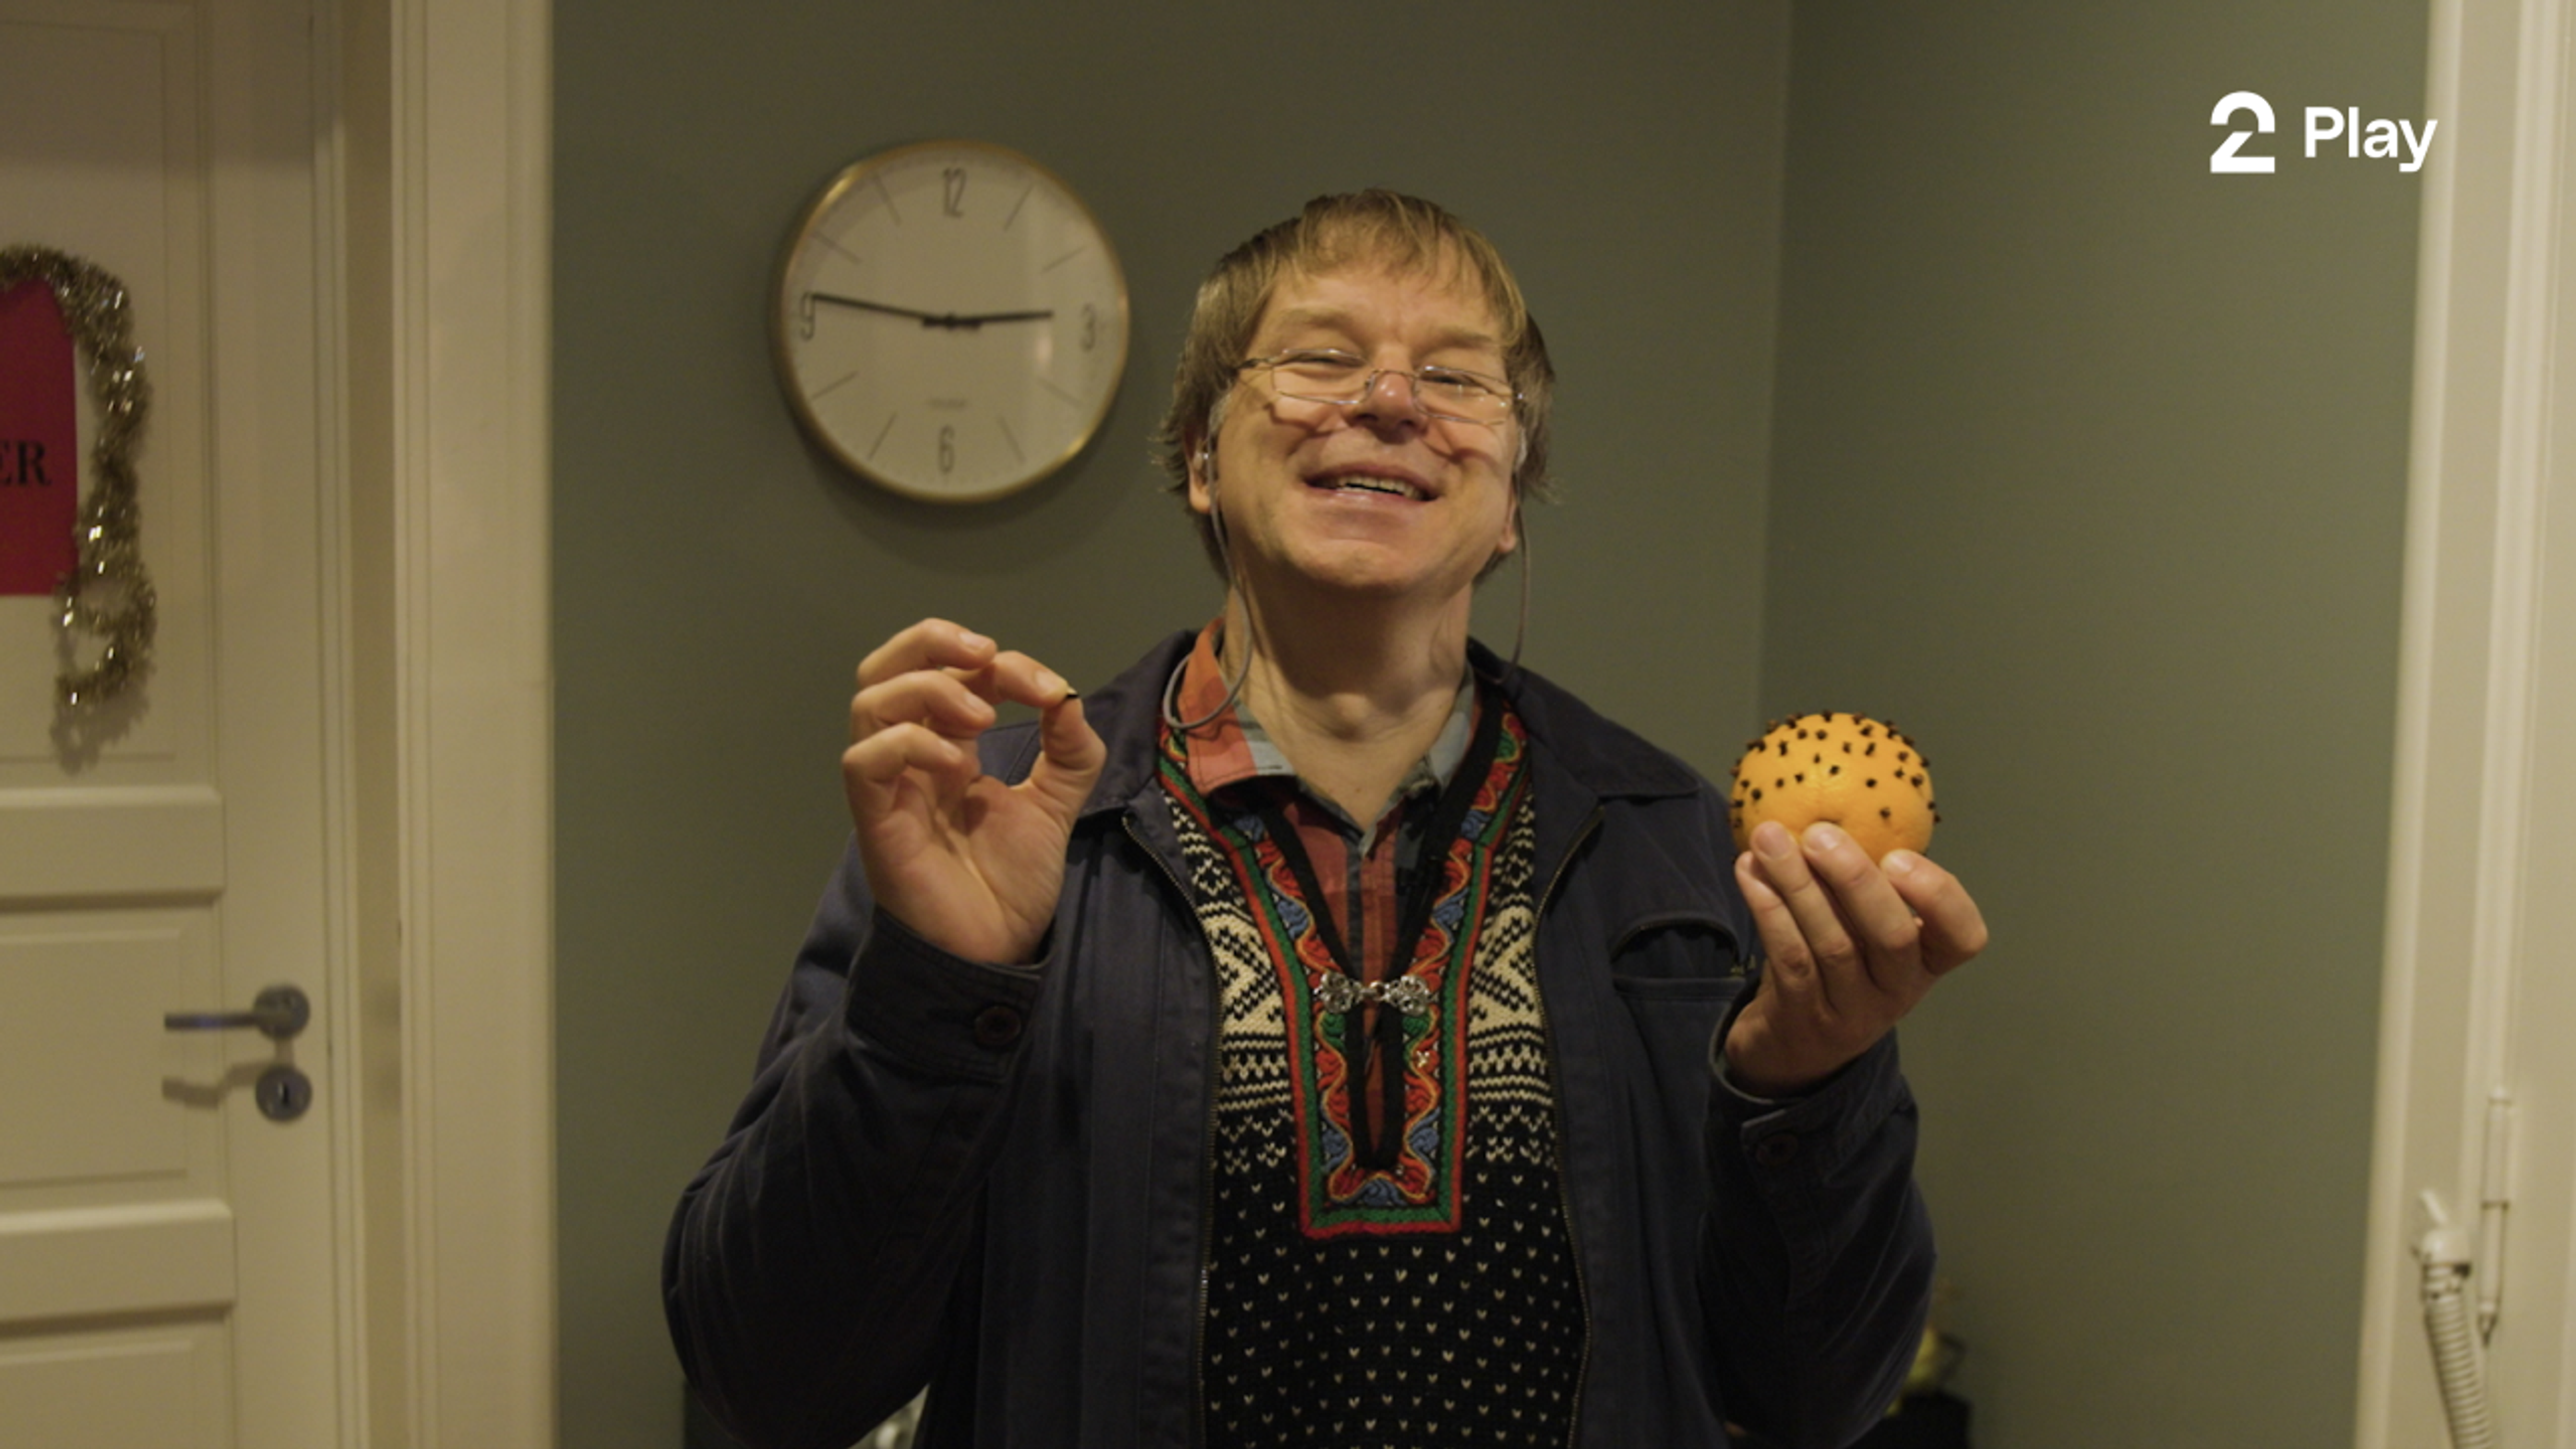 Programleder Asbjørn holder opp en appelsin med nellikspiker som sin julekalender